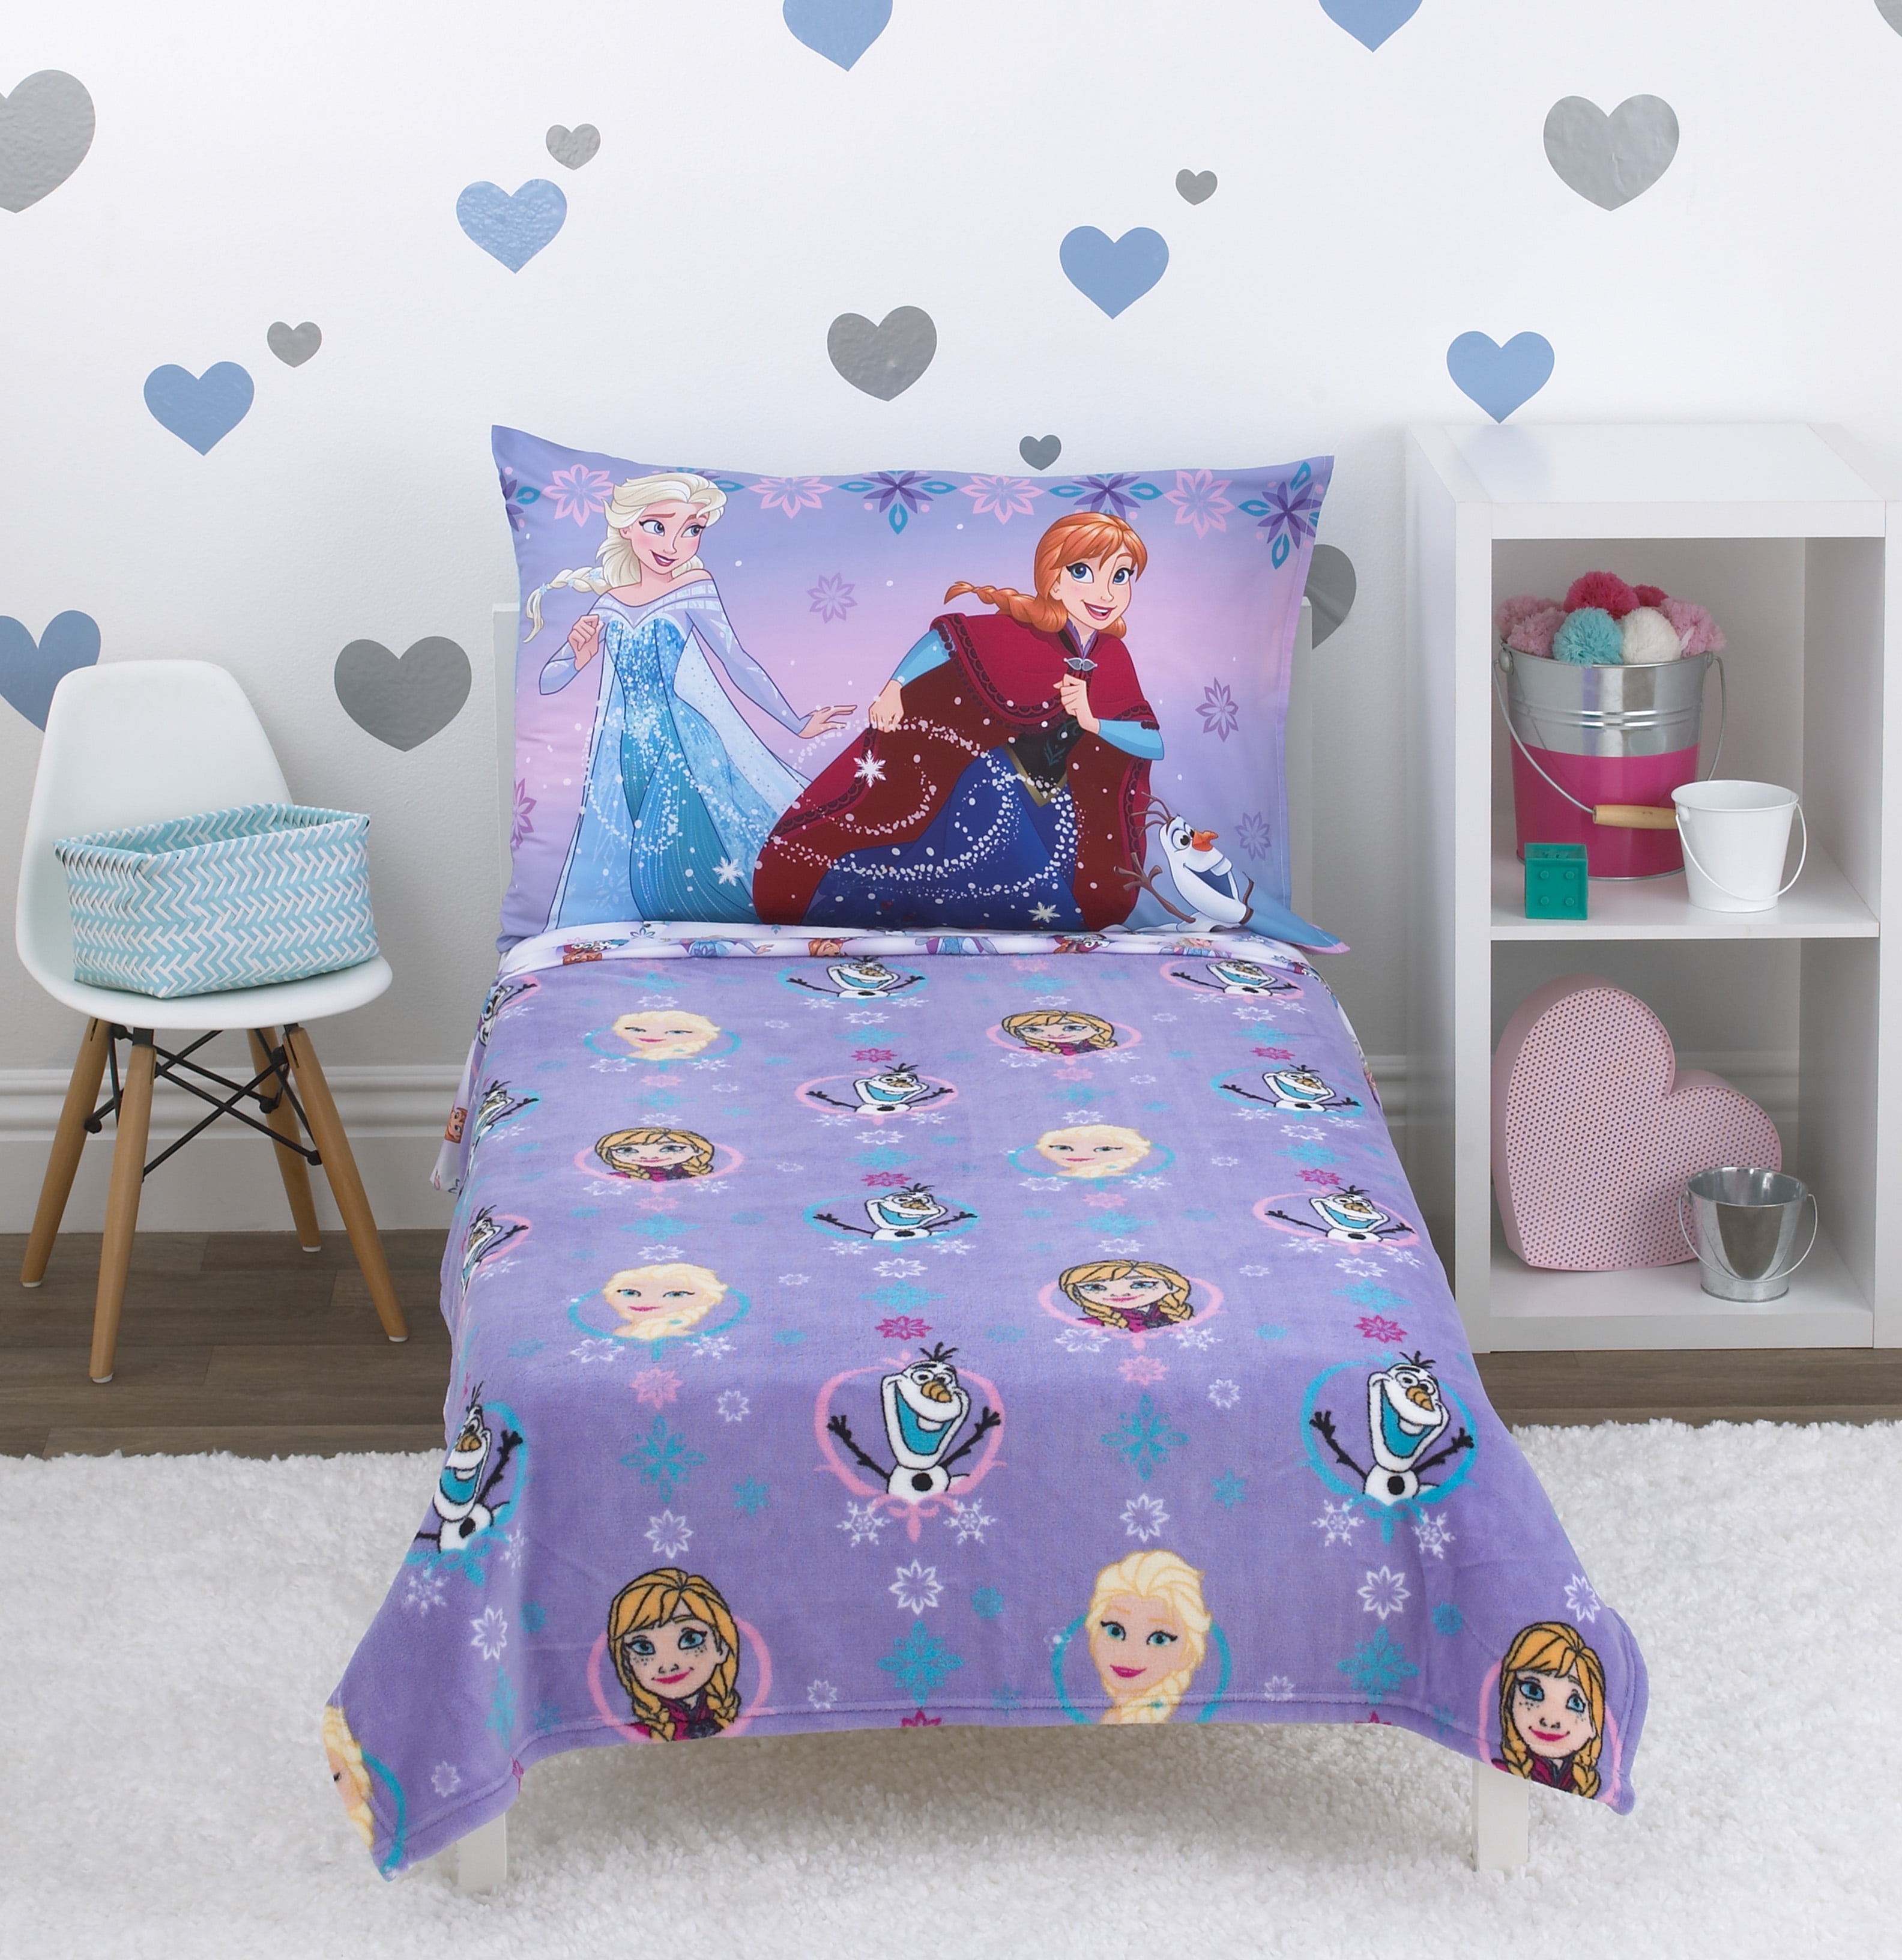 Disney Frozen Sisters Forever Toddler Bedding Set 4pc Bed Set Comforter 